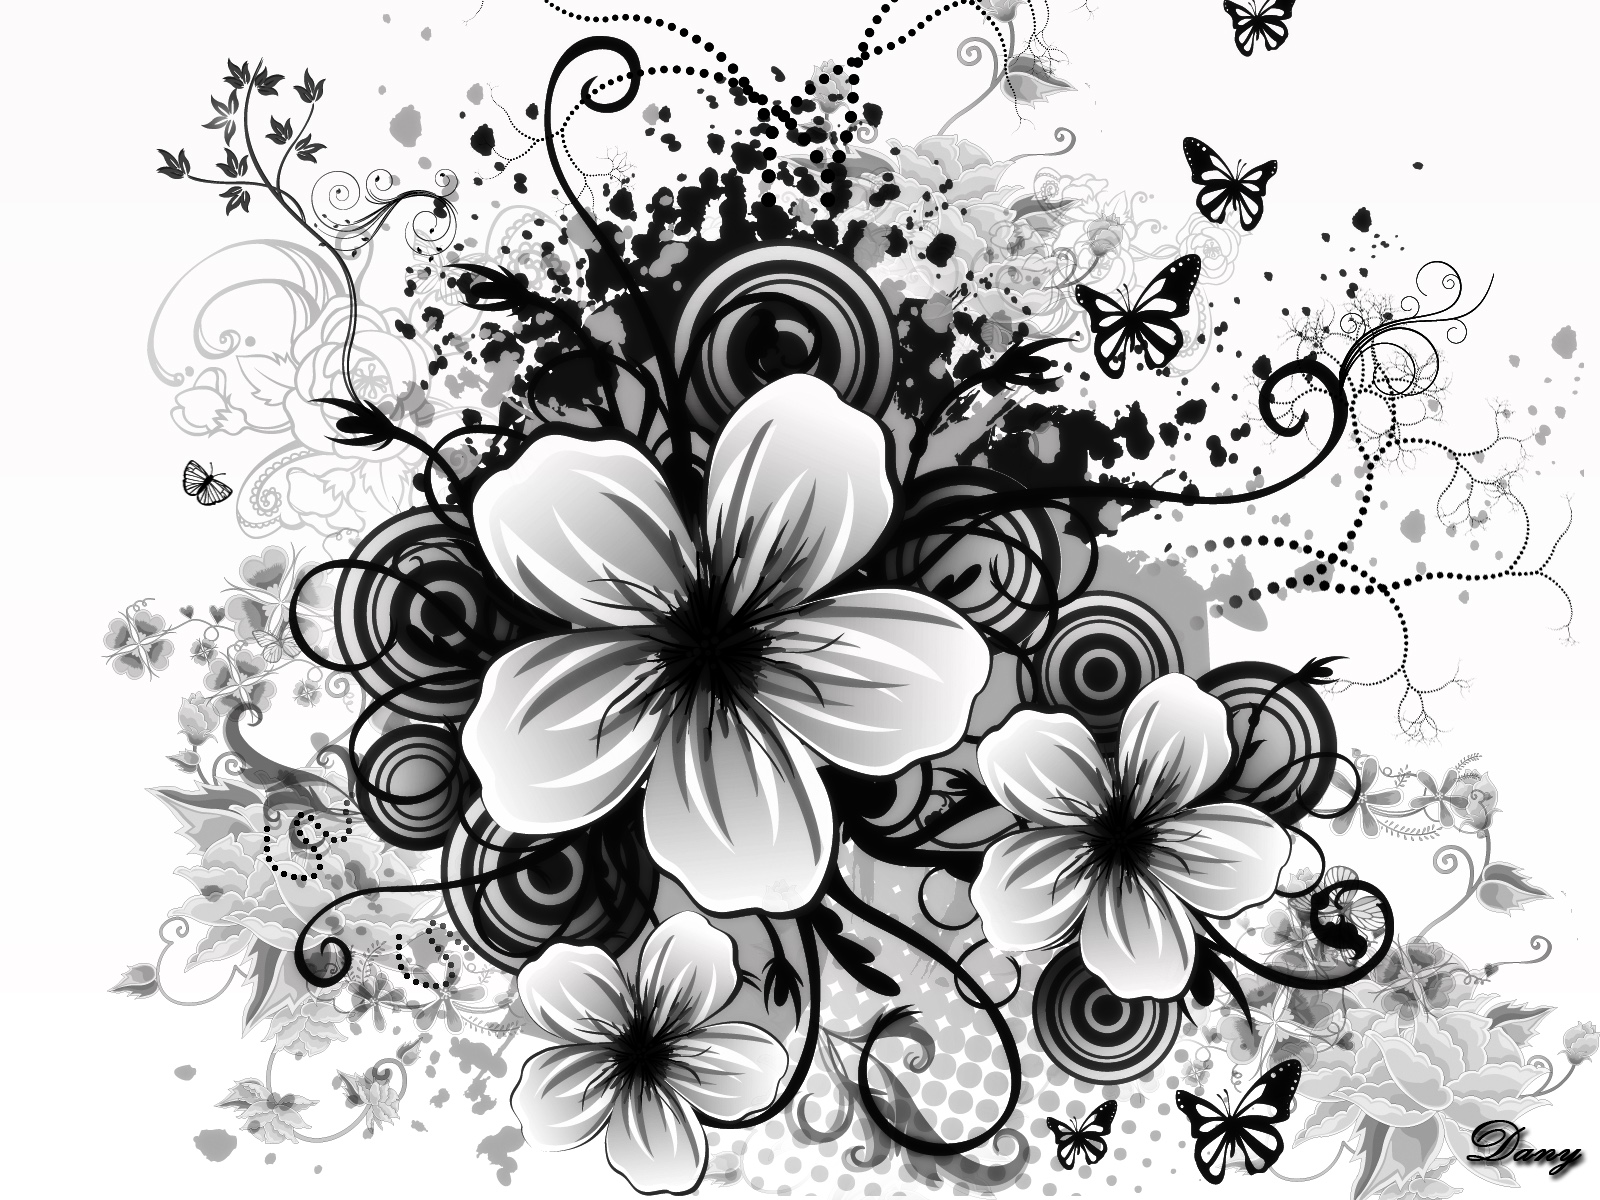 黒と白の花の壁紙,黒と白,モノクロ写真,花,花弁,工場